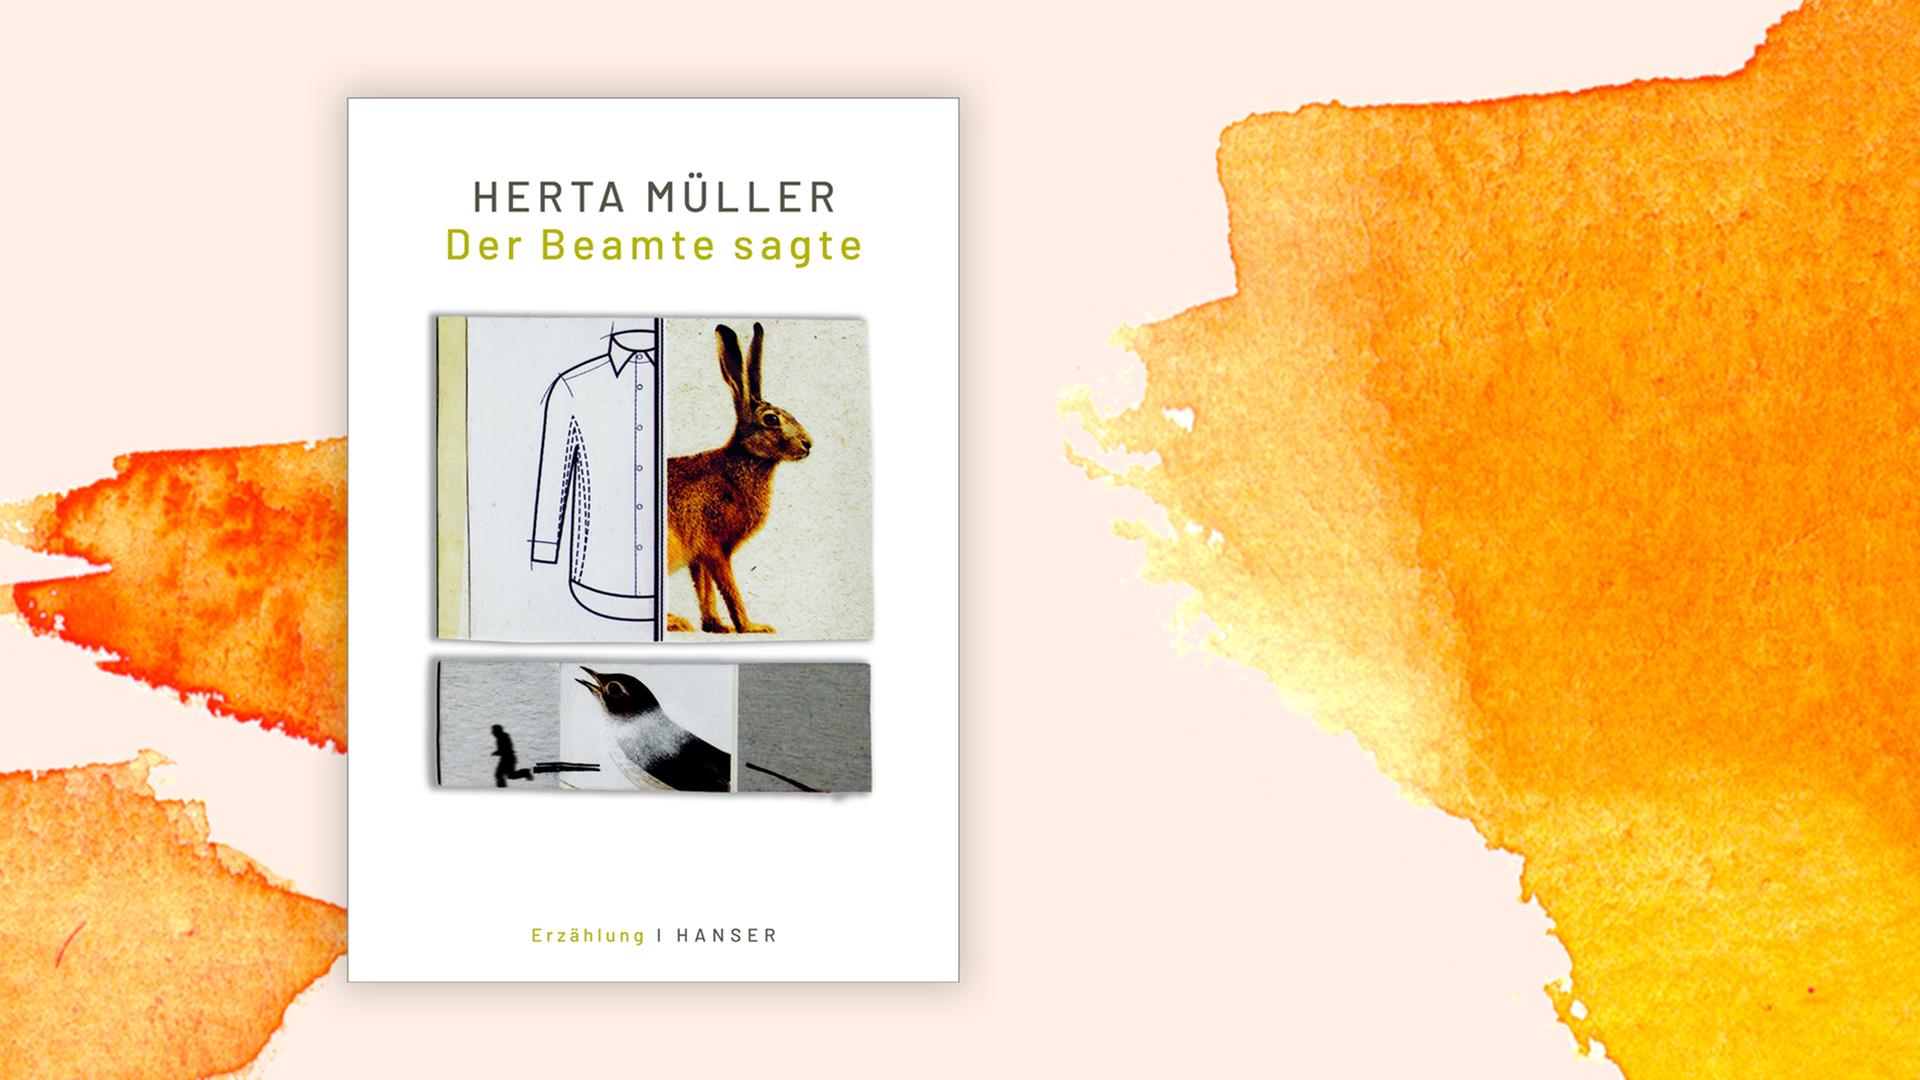 Cover von Herta Müllers Erzählband "Der Beamte sagte" auf orangem Hintergrund.